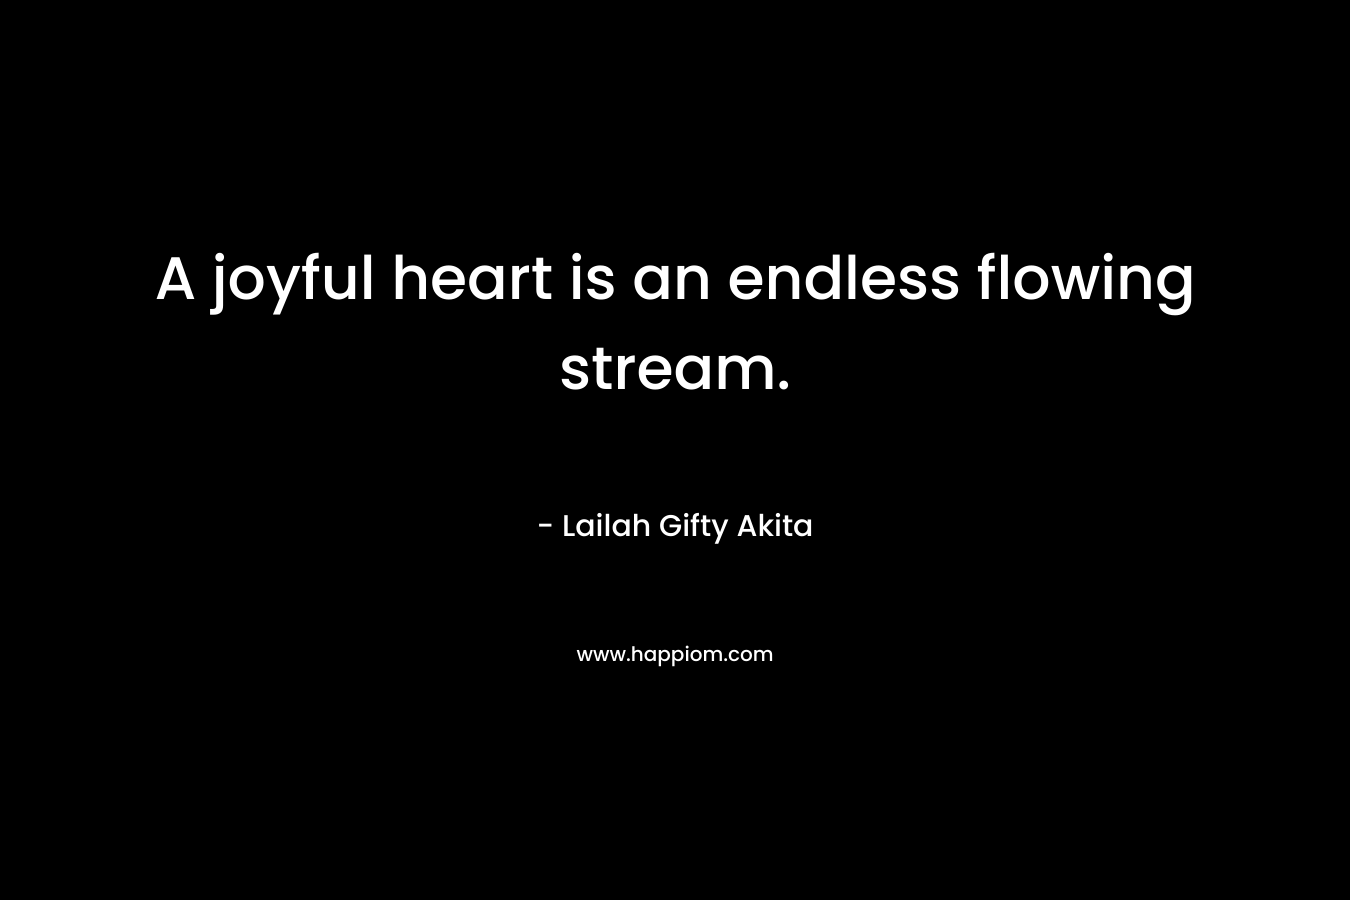 A joyful heart is an endless flowing stream.